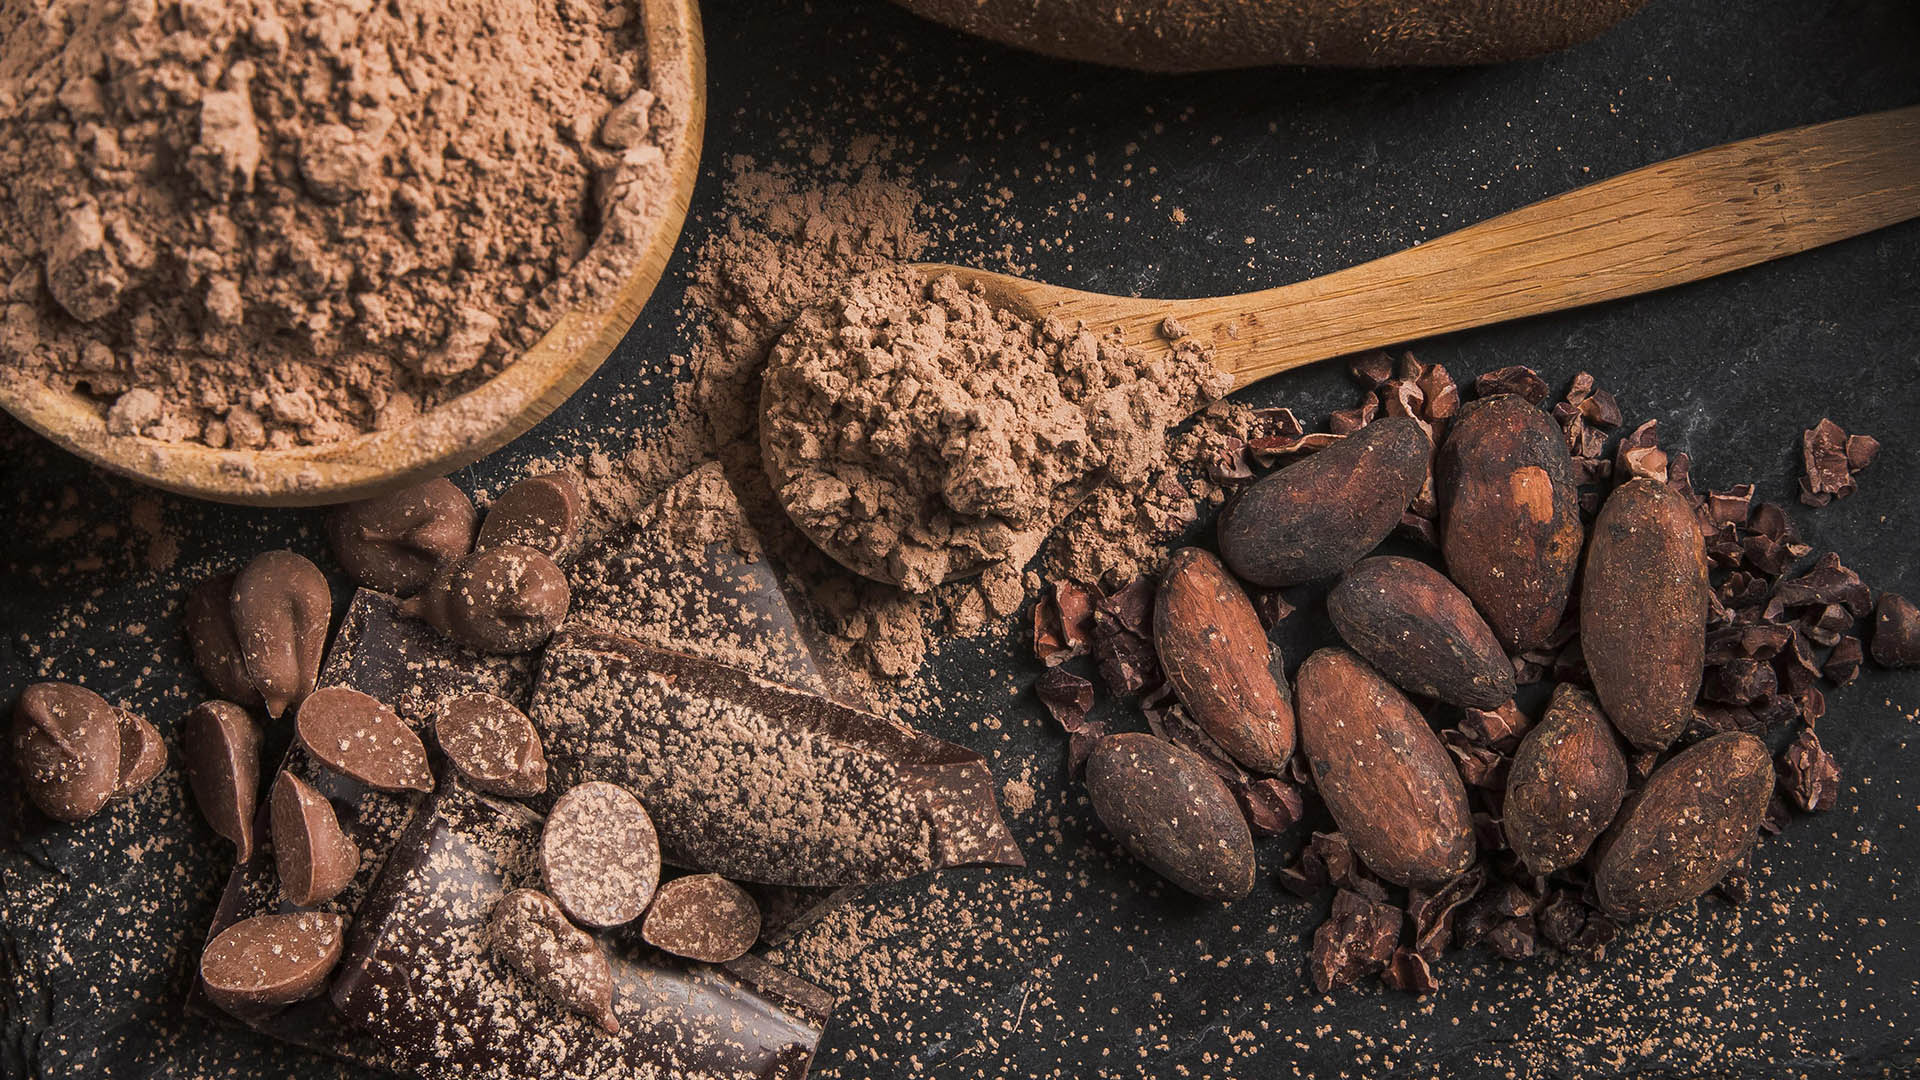 Le bacche di cacao e il cacao in polvere che si ottiene mediante torrefazione, sgranatura e macinazione